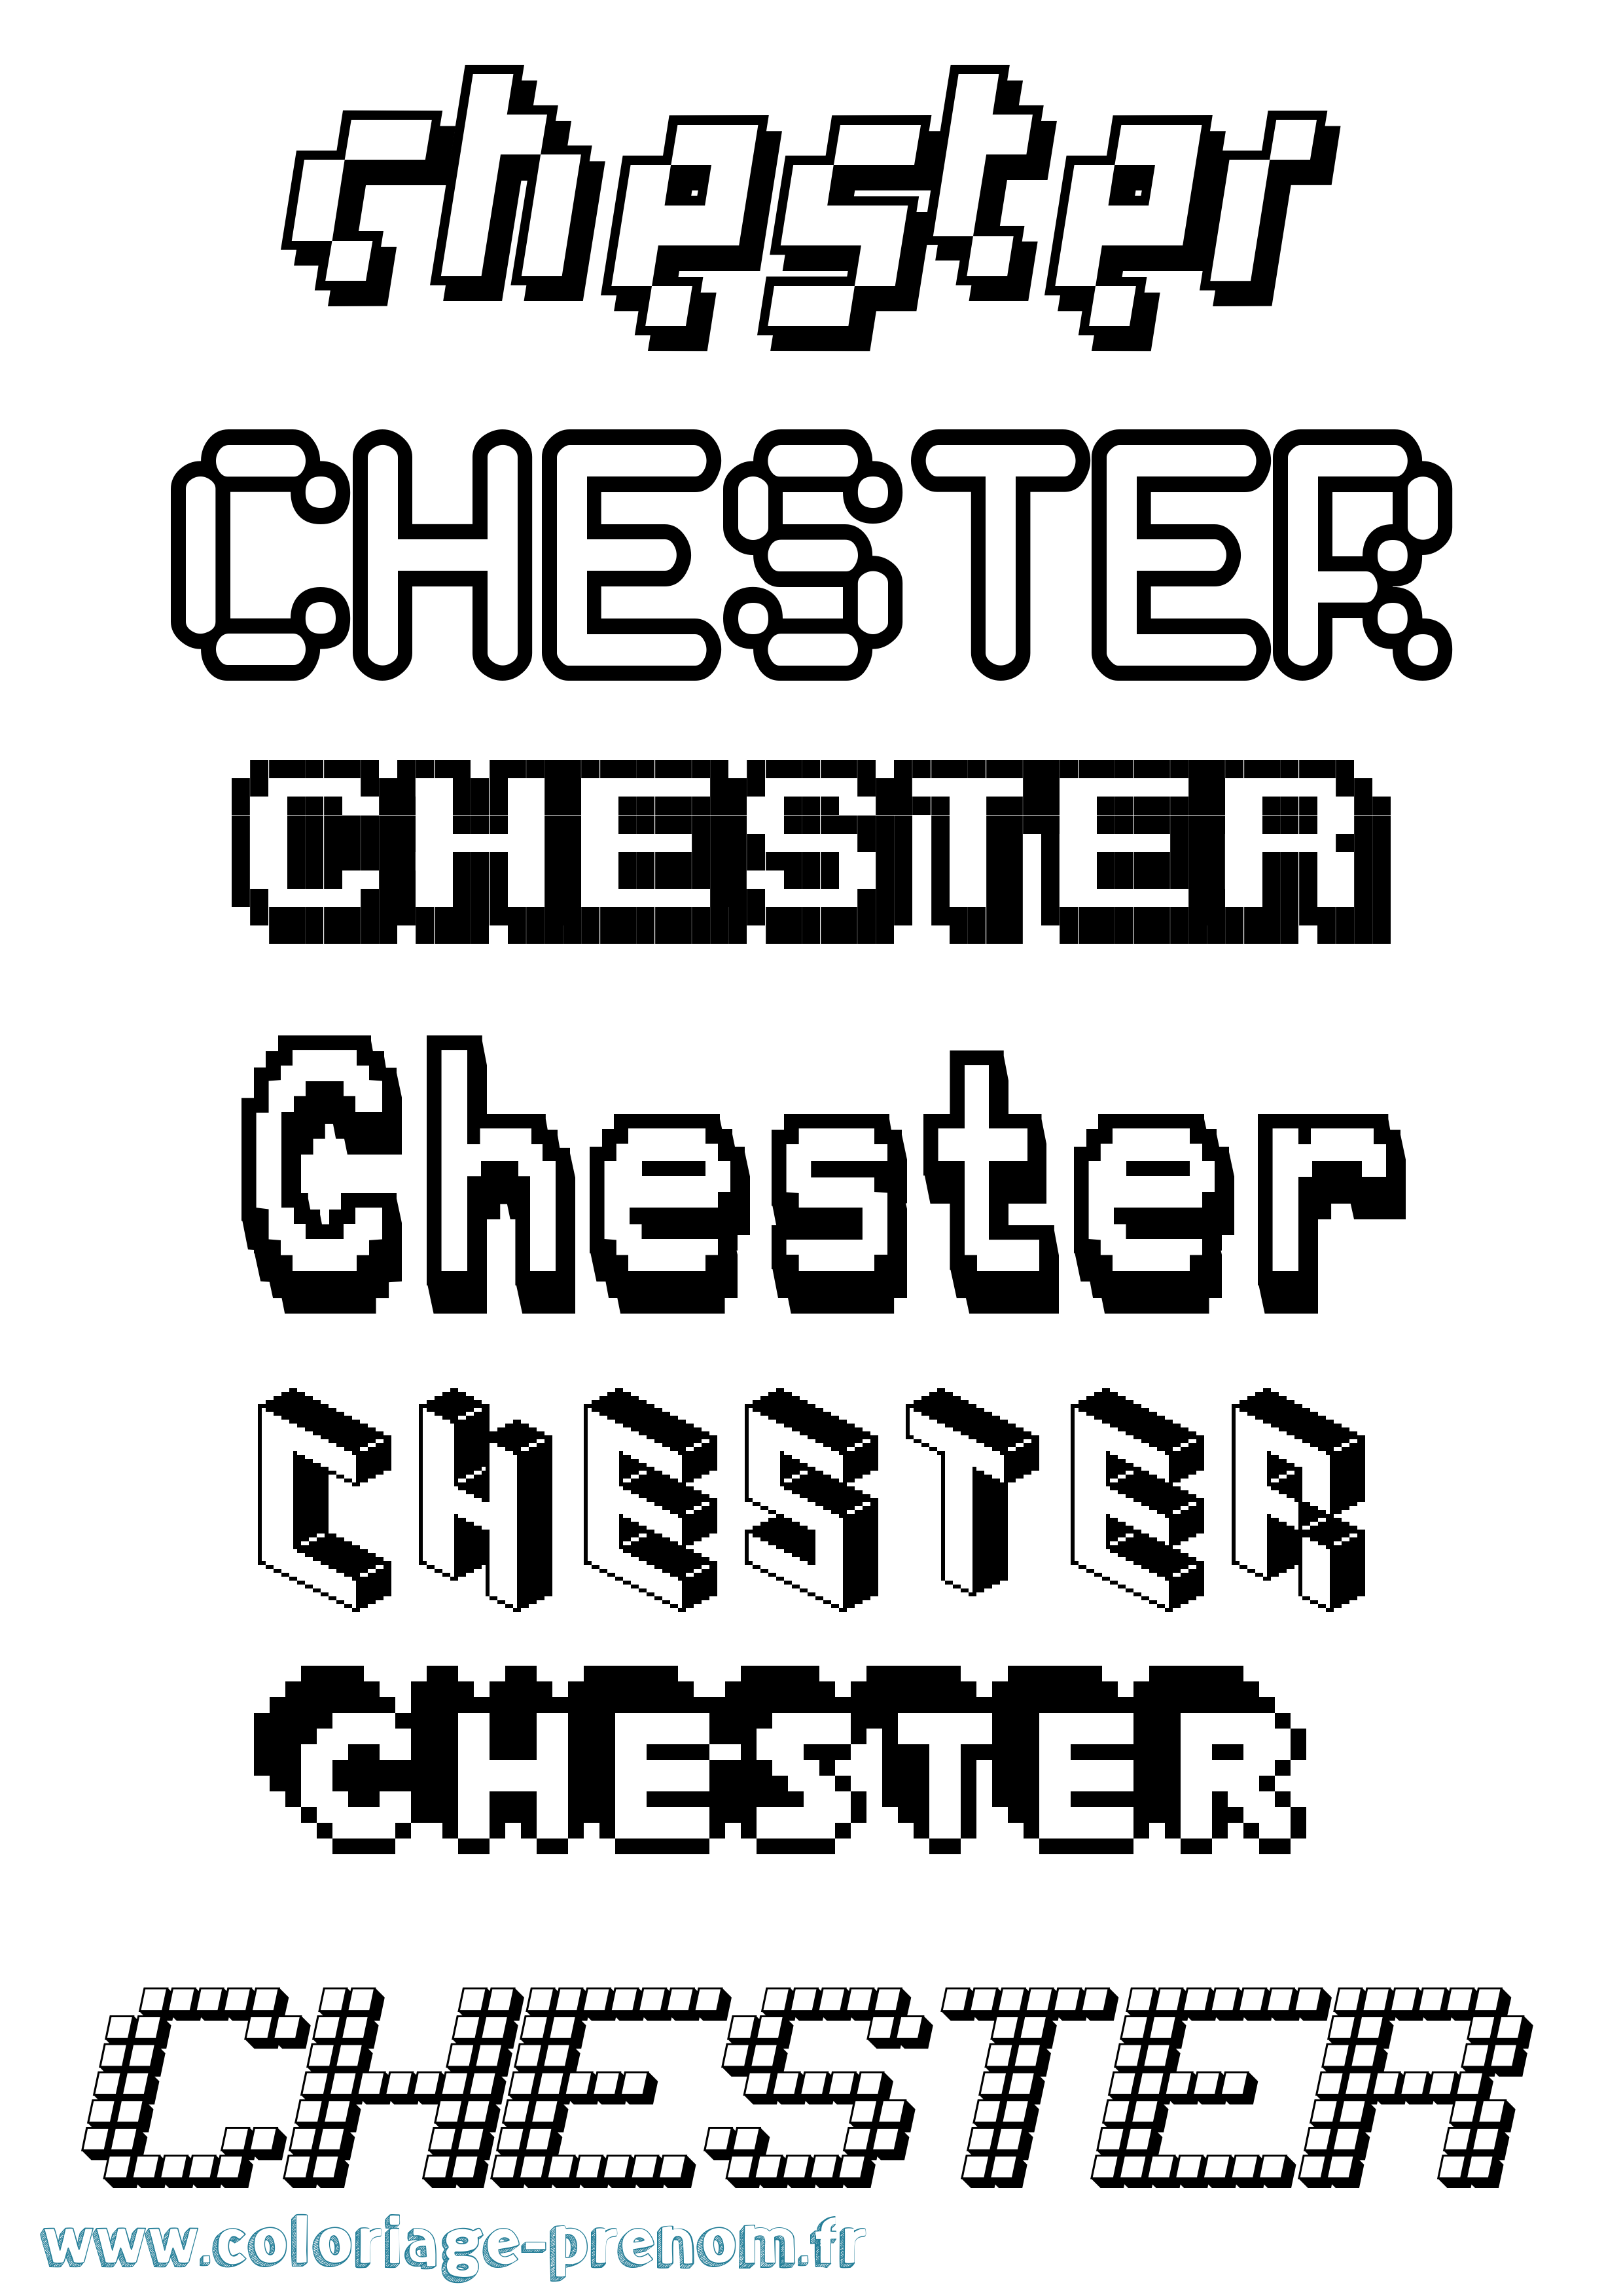 Coloriage prénom Chester Pixel